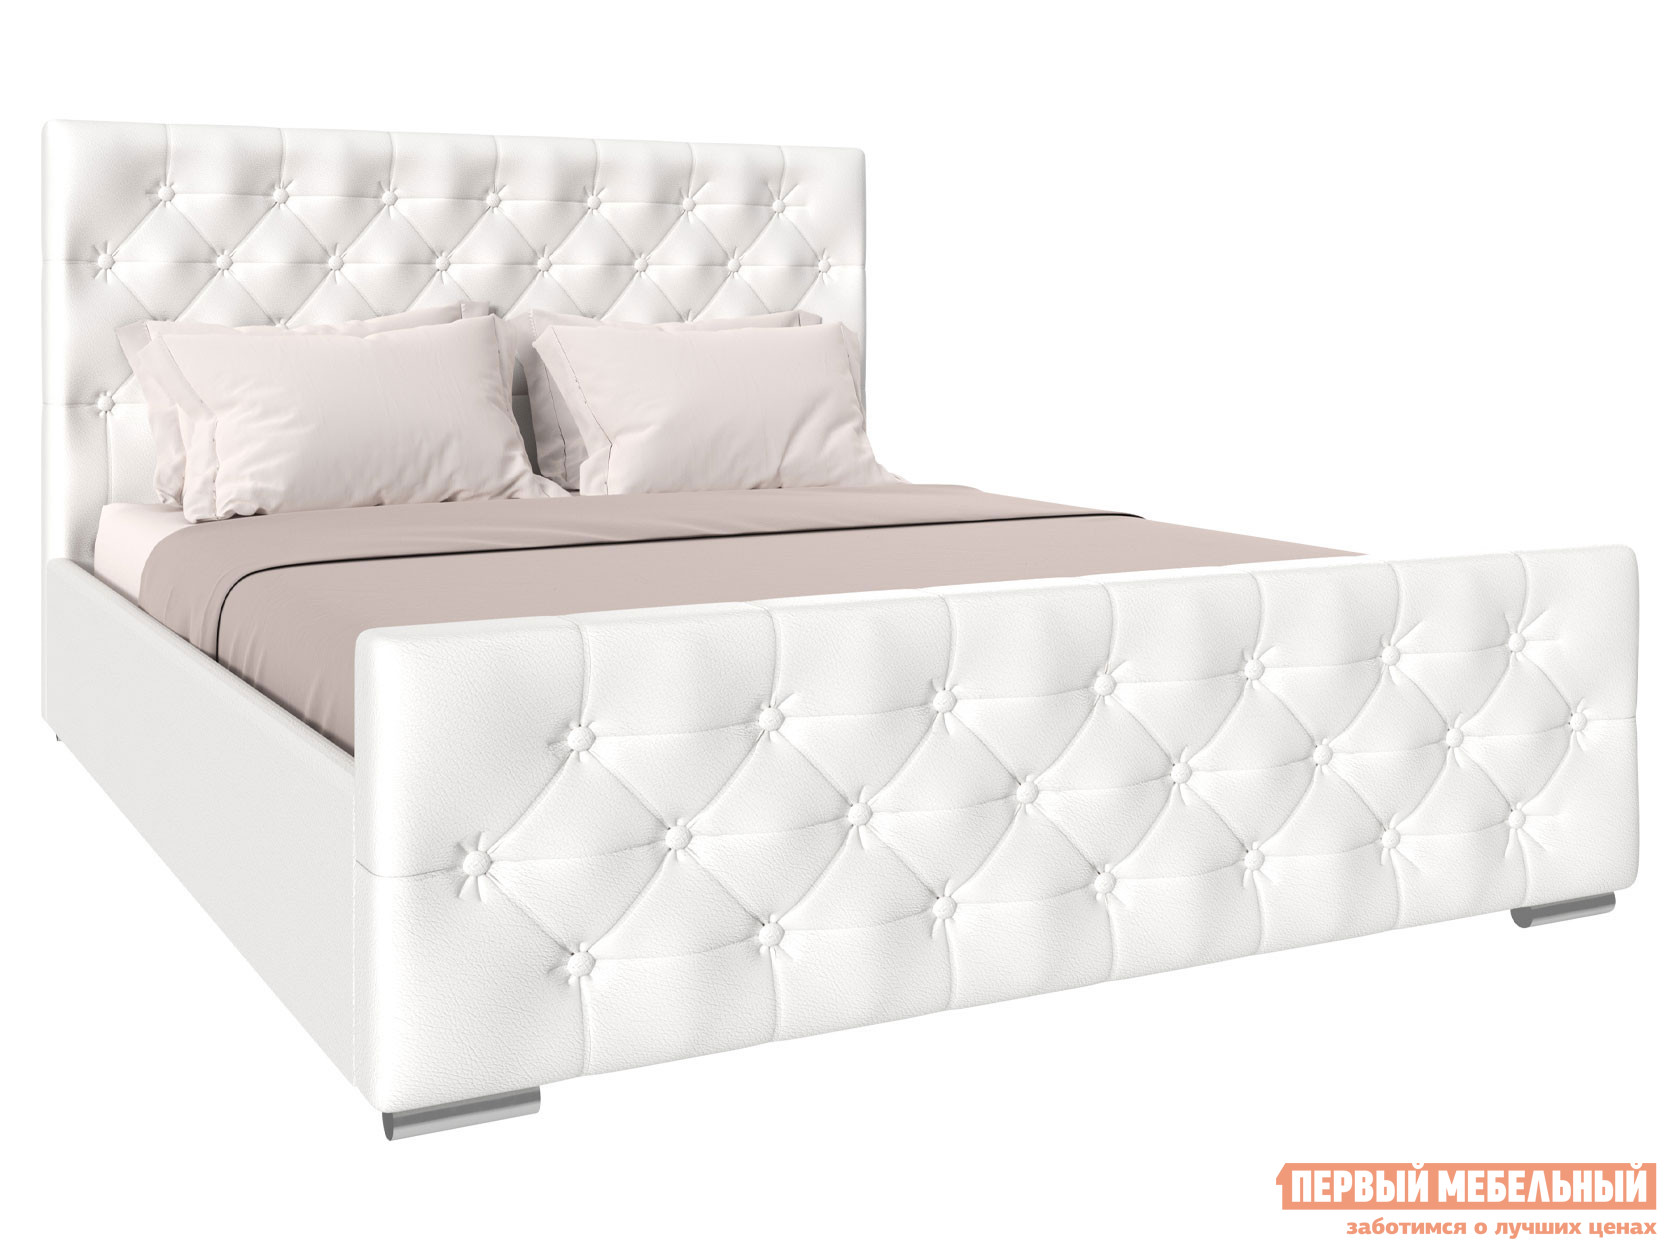 Двуспальная кровать  Интеро ПМ Белый, экокожа, 140х200 см